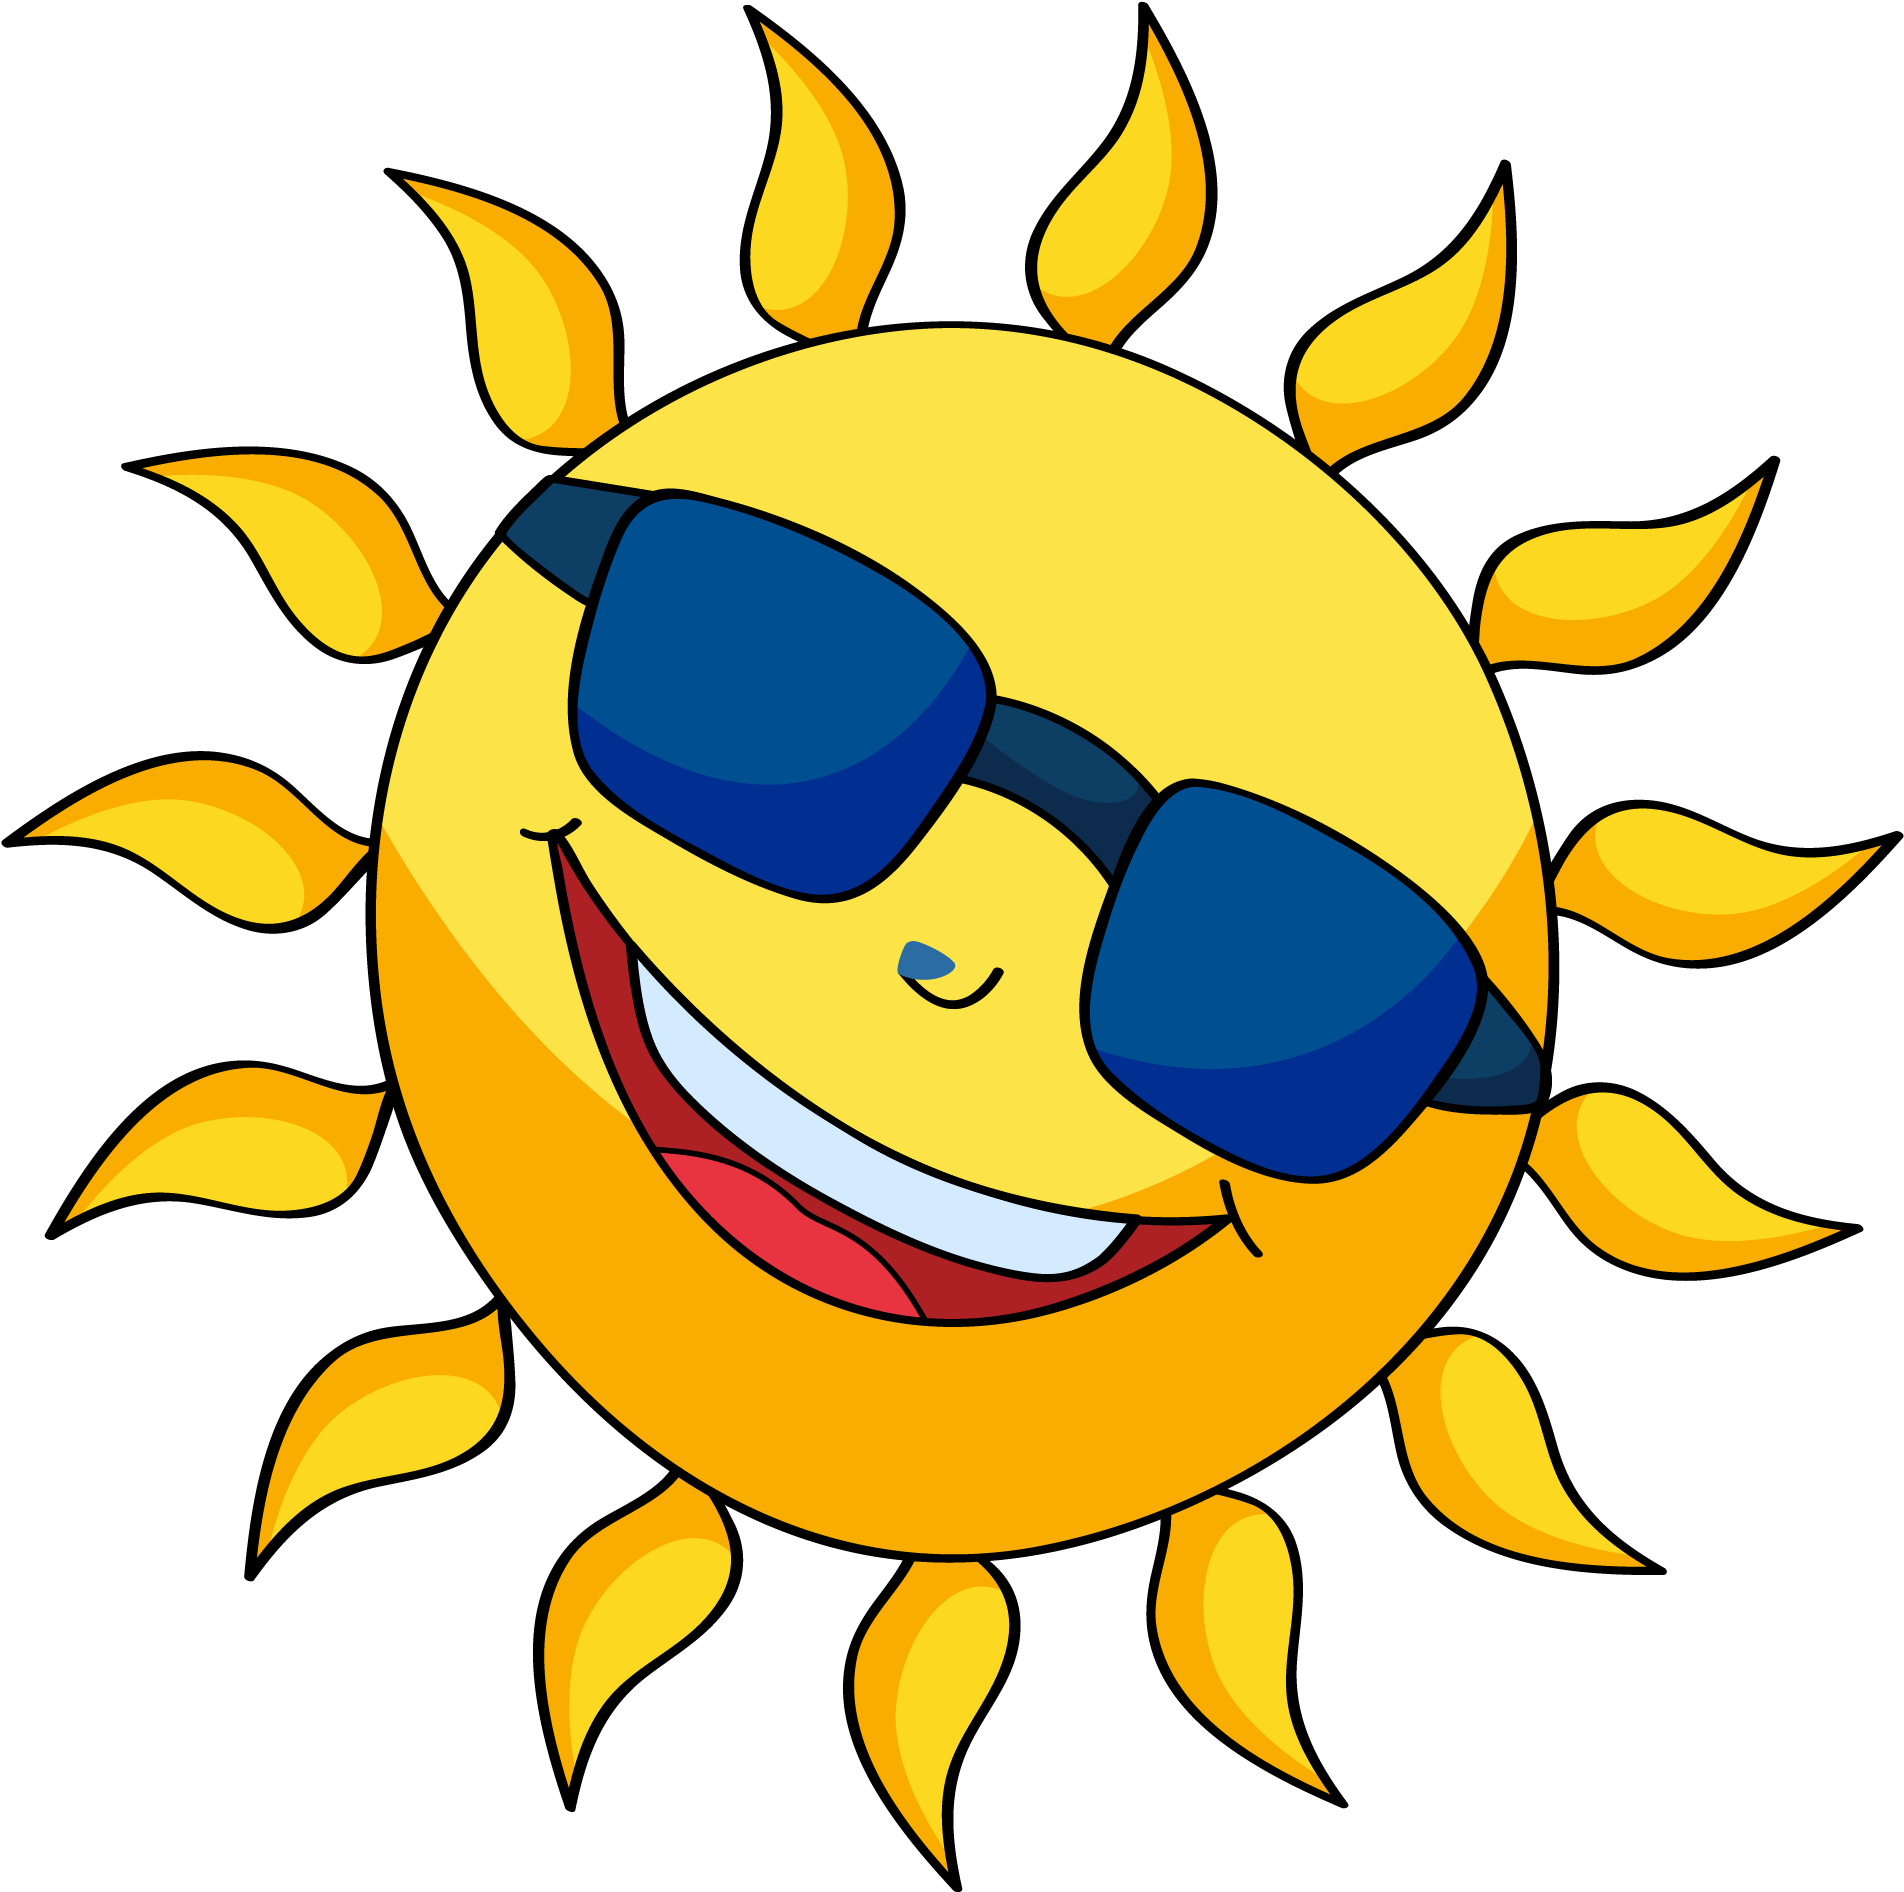 A Cartoon Sun Wearing Sunglasses